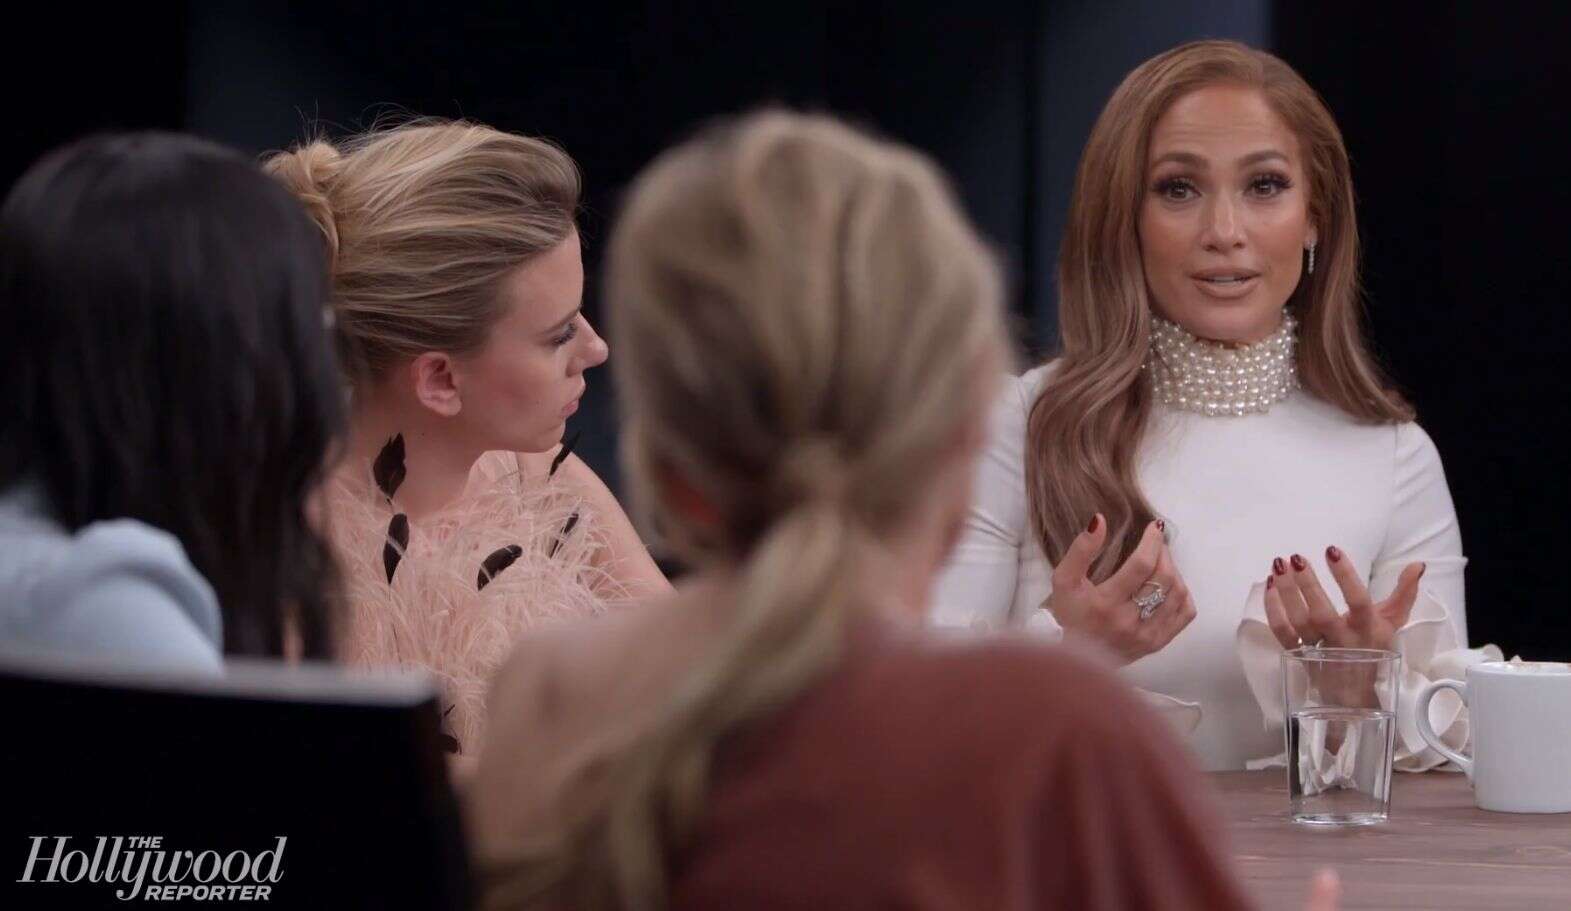 Jennifer Lopez prend la parole et révèle avoir été victime de harcèlement sexuel durant le tournage d’un film.